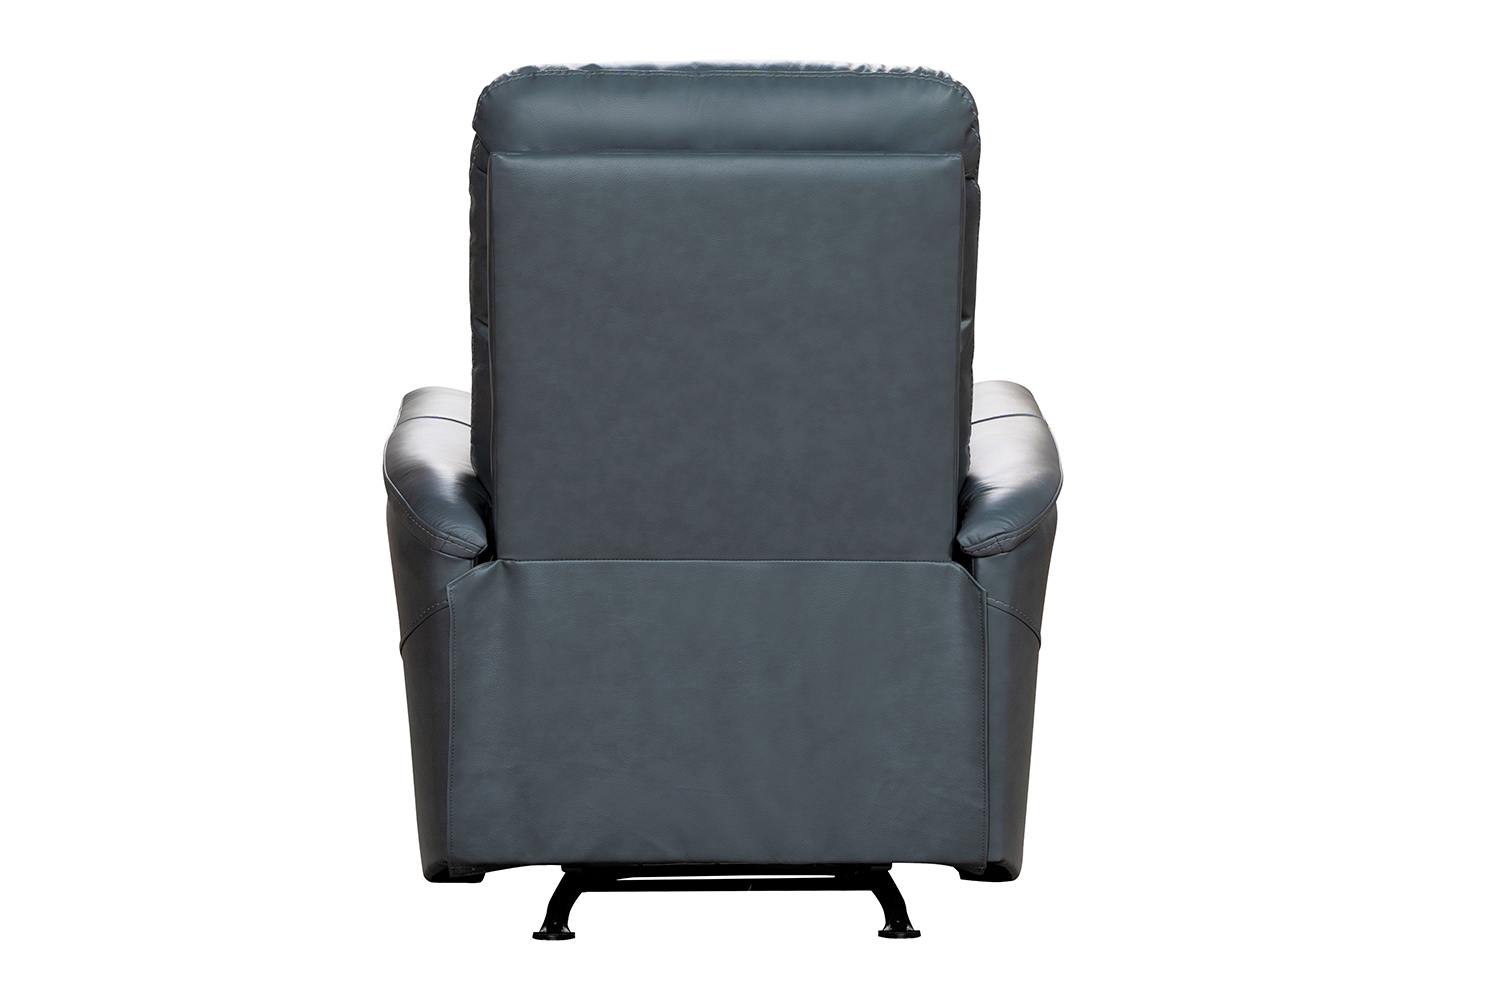 Barcalounger Horton Power Rocker Recliner Chair with Power Head Rest - Masen Bluegray/Leather match